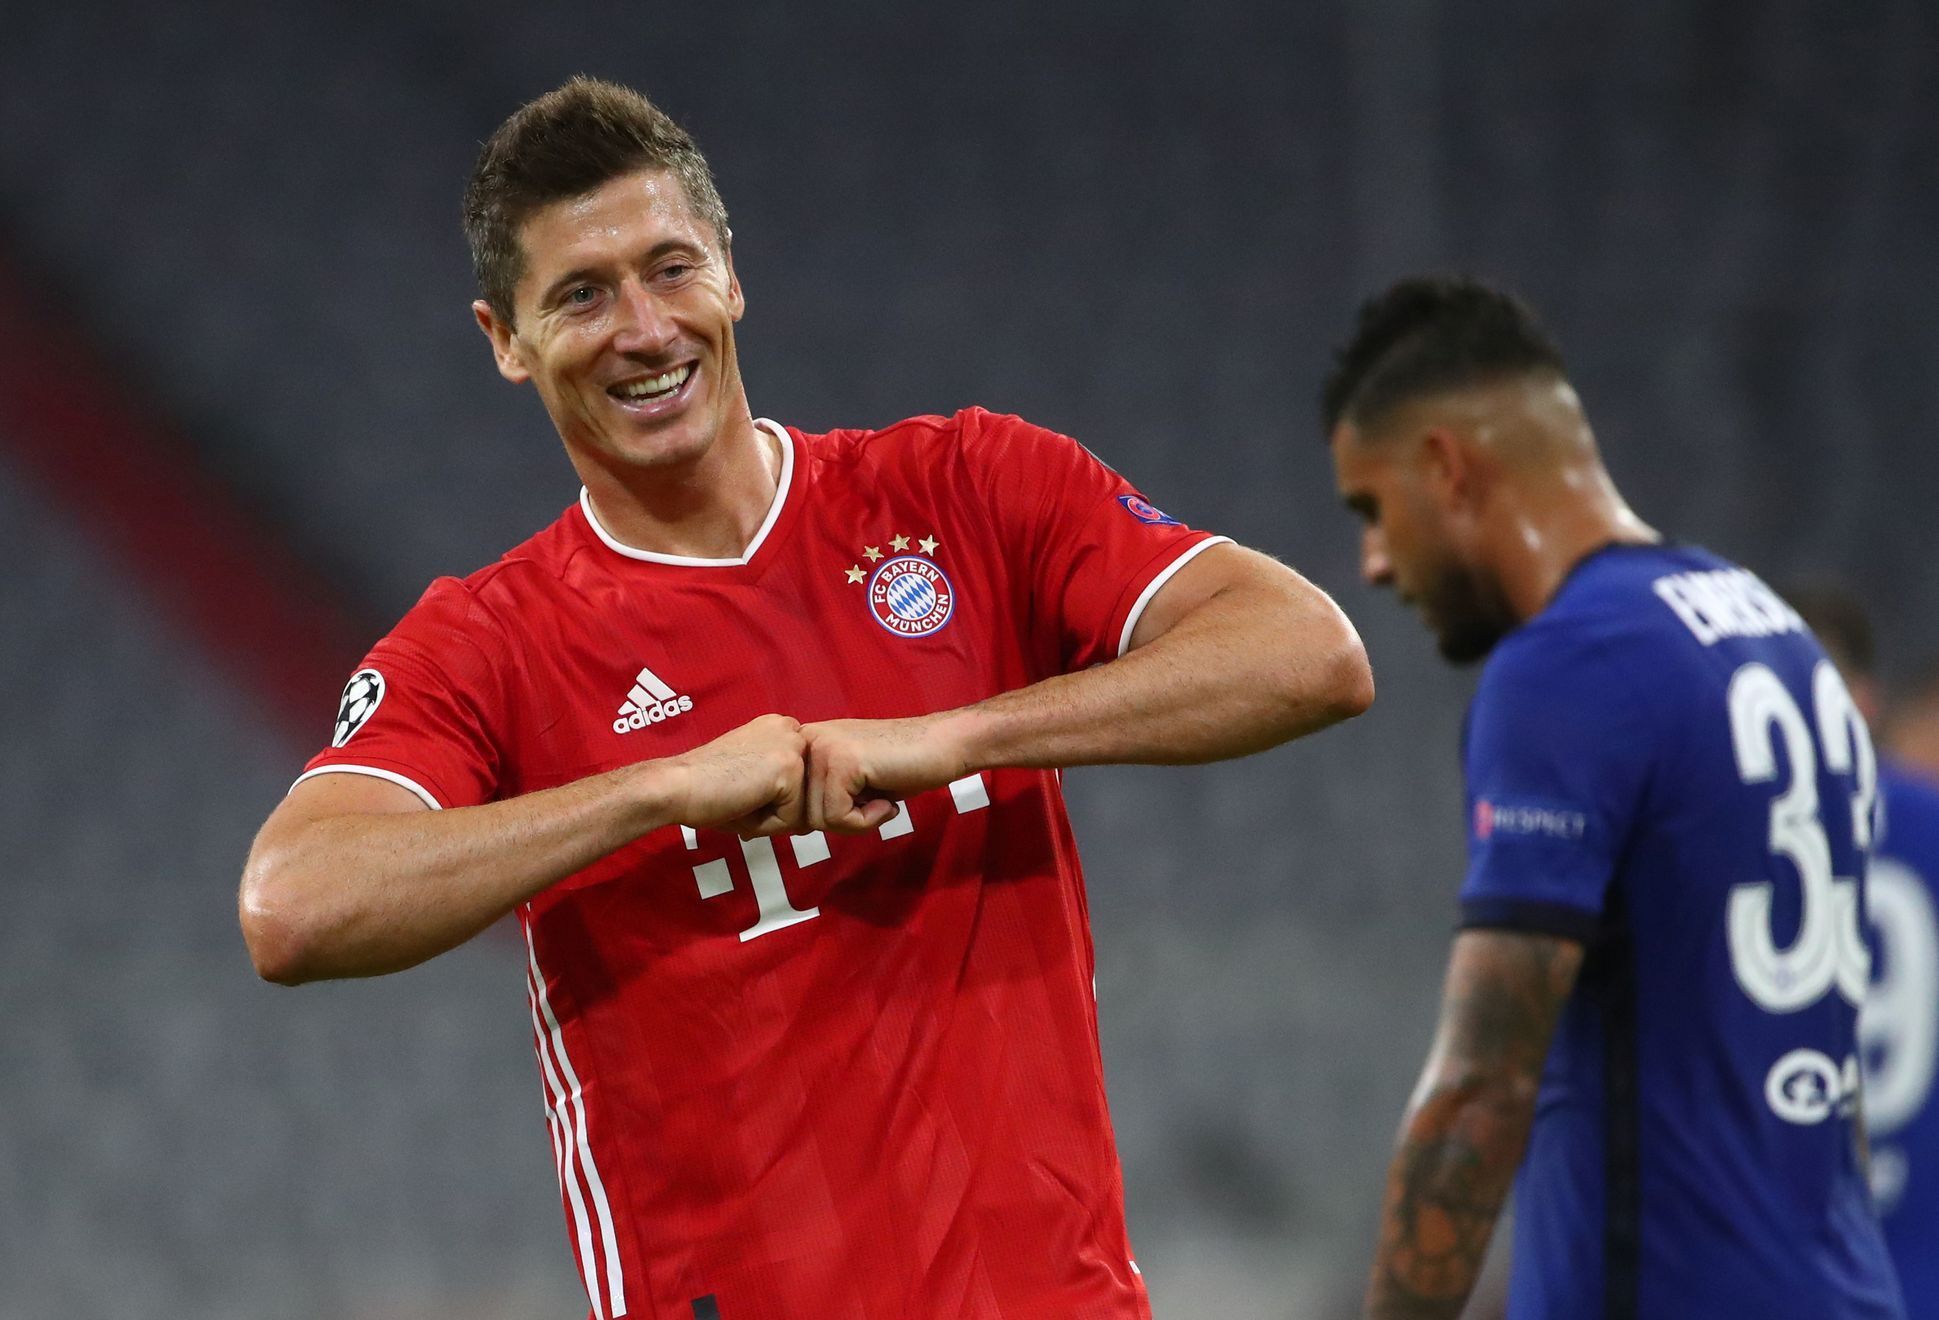 Robert Lewandowski slaví gól v odvetném osmifinále Ligy mistrů Bayern - Chelsea